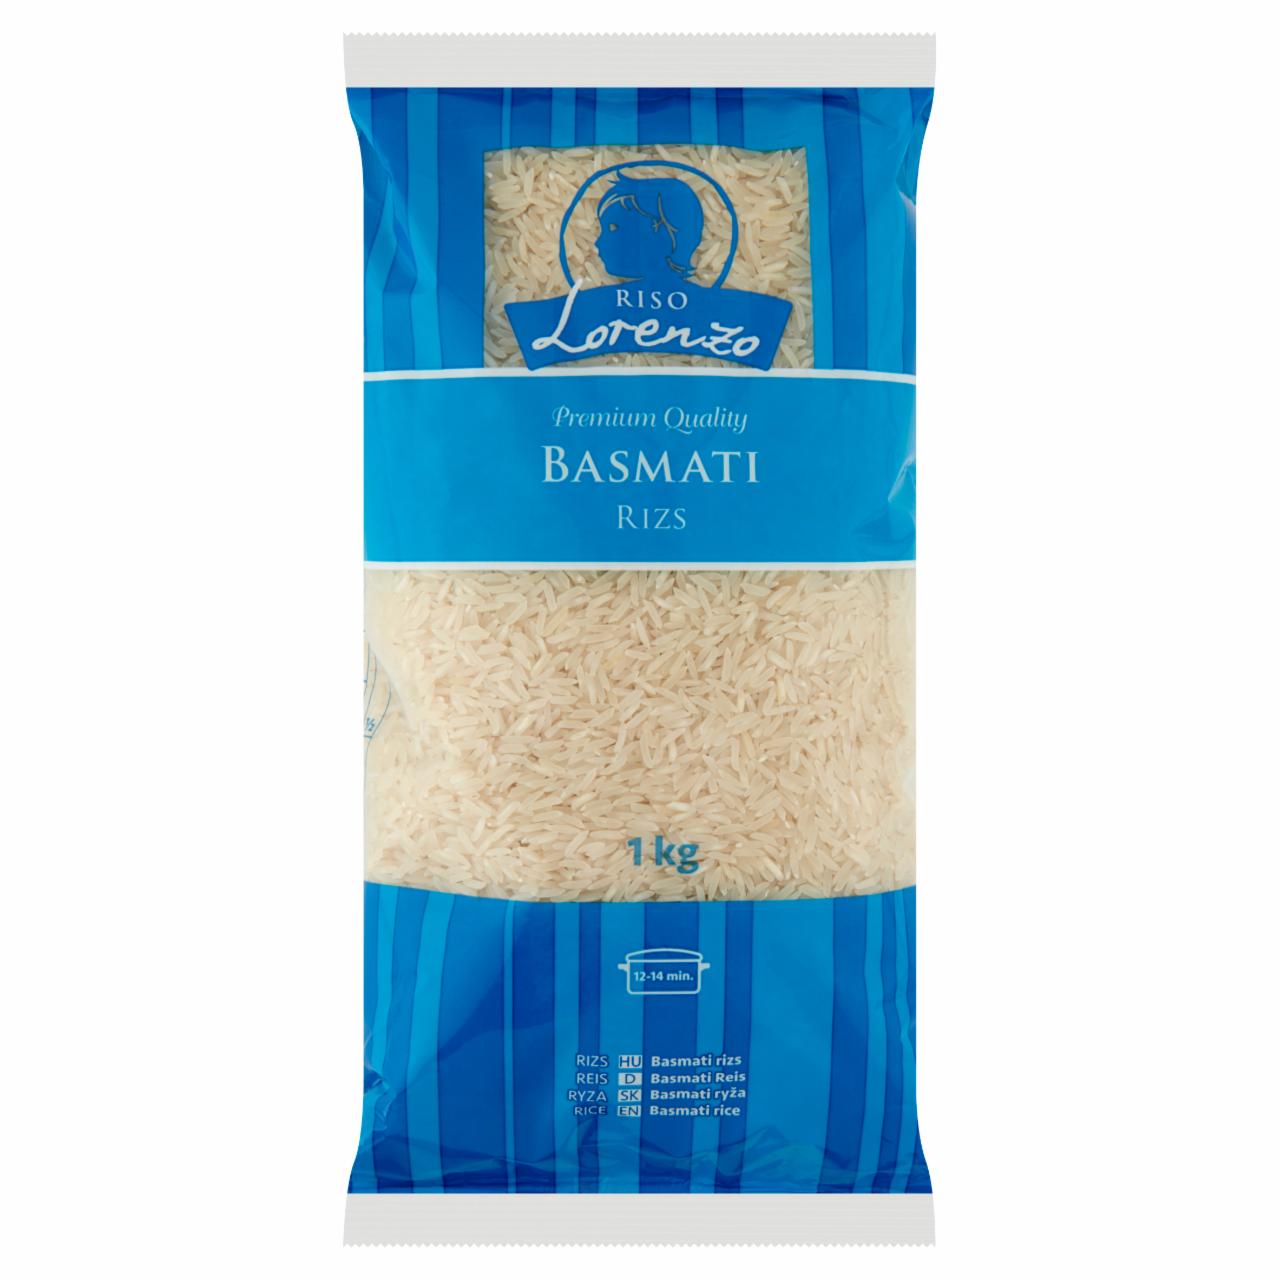 Képek - Riso Lorenzo basmati rizs 1 kg